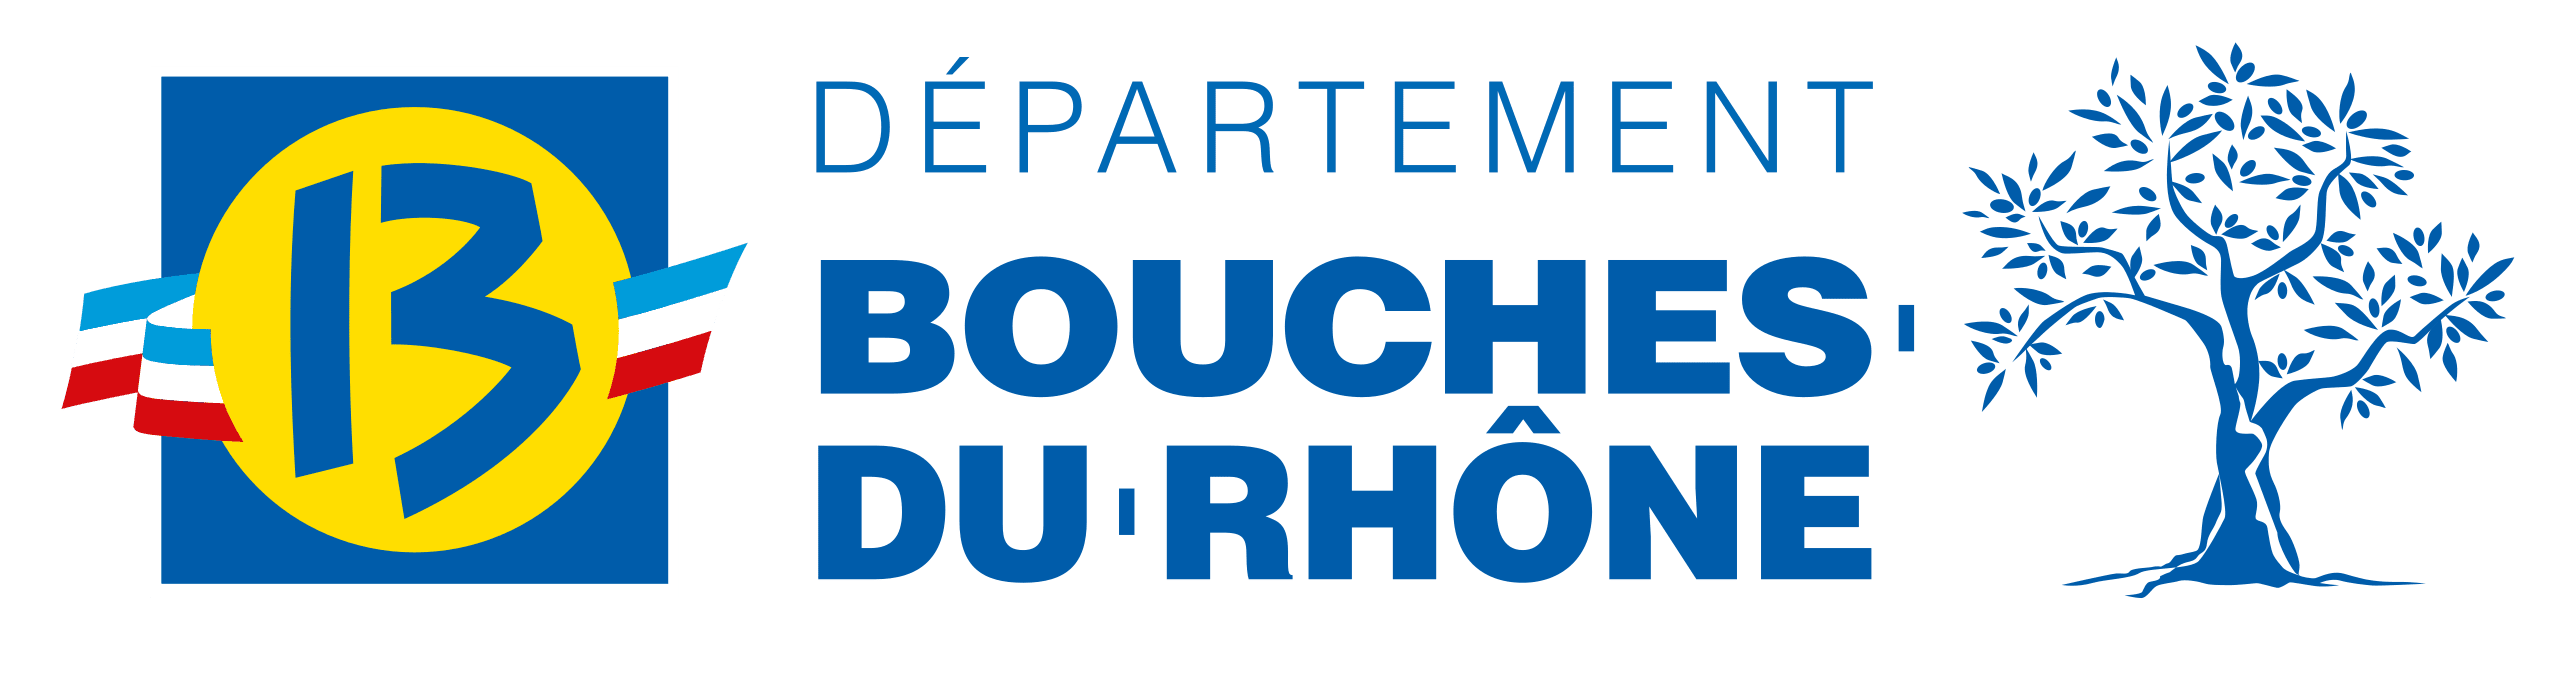 Département Bouches-du-Rhône